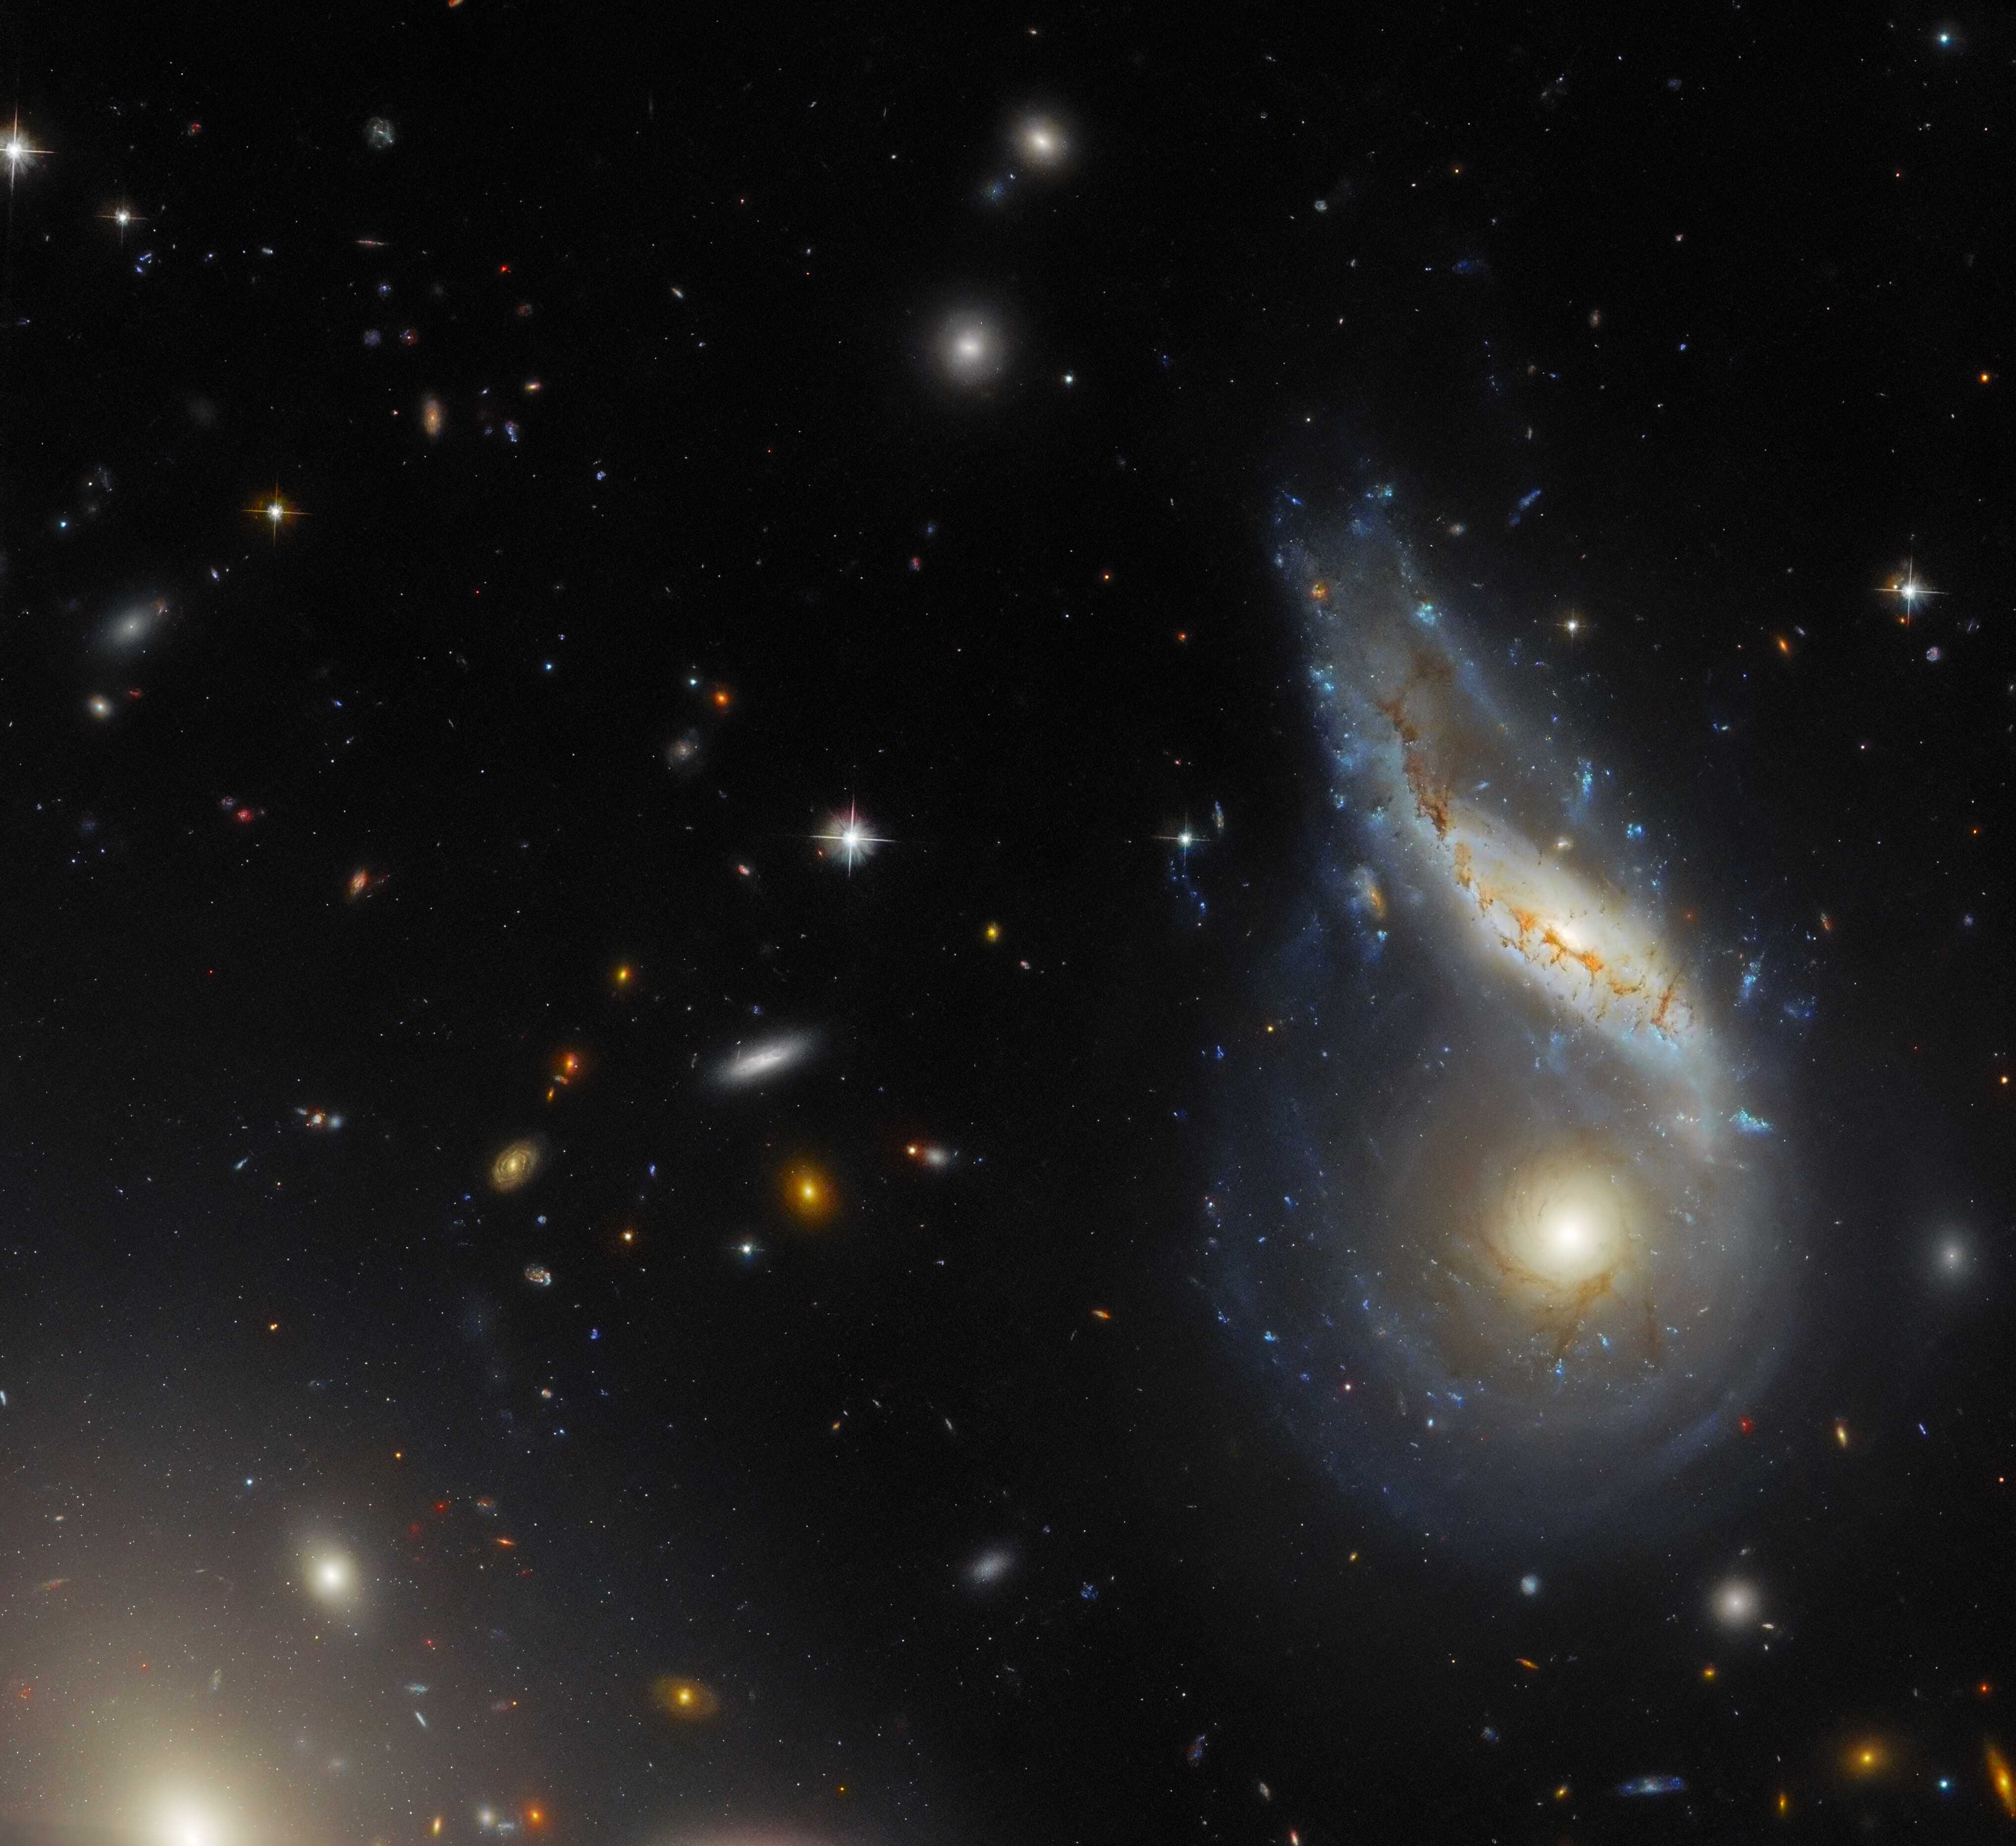 «Хаббл» получил изображение двух сливающихся спиральных галактик